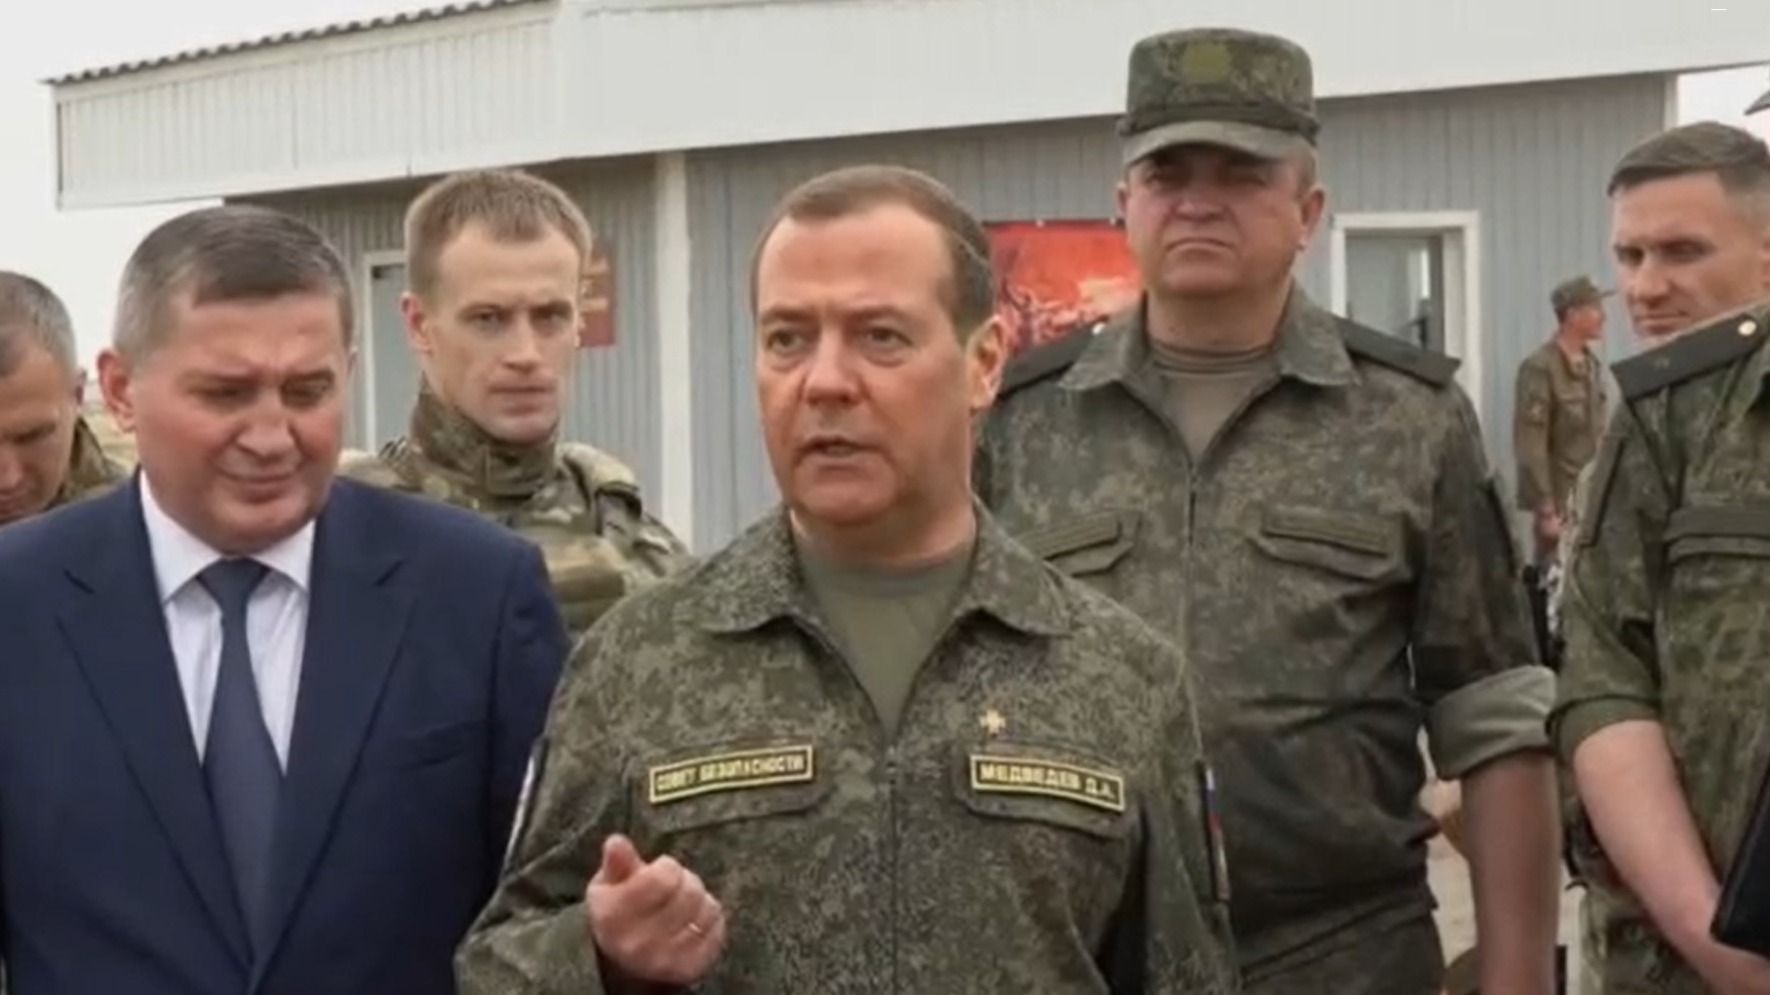 Прилёты ракет в города России Медведев назвал терактами